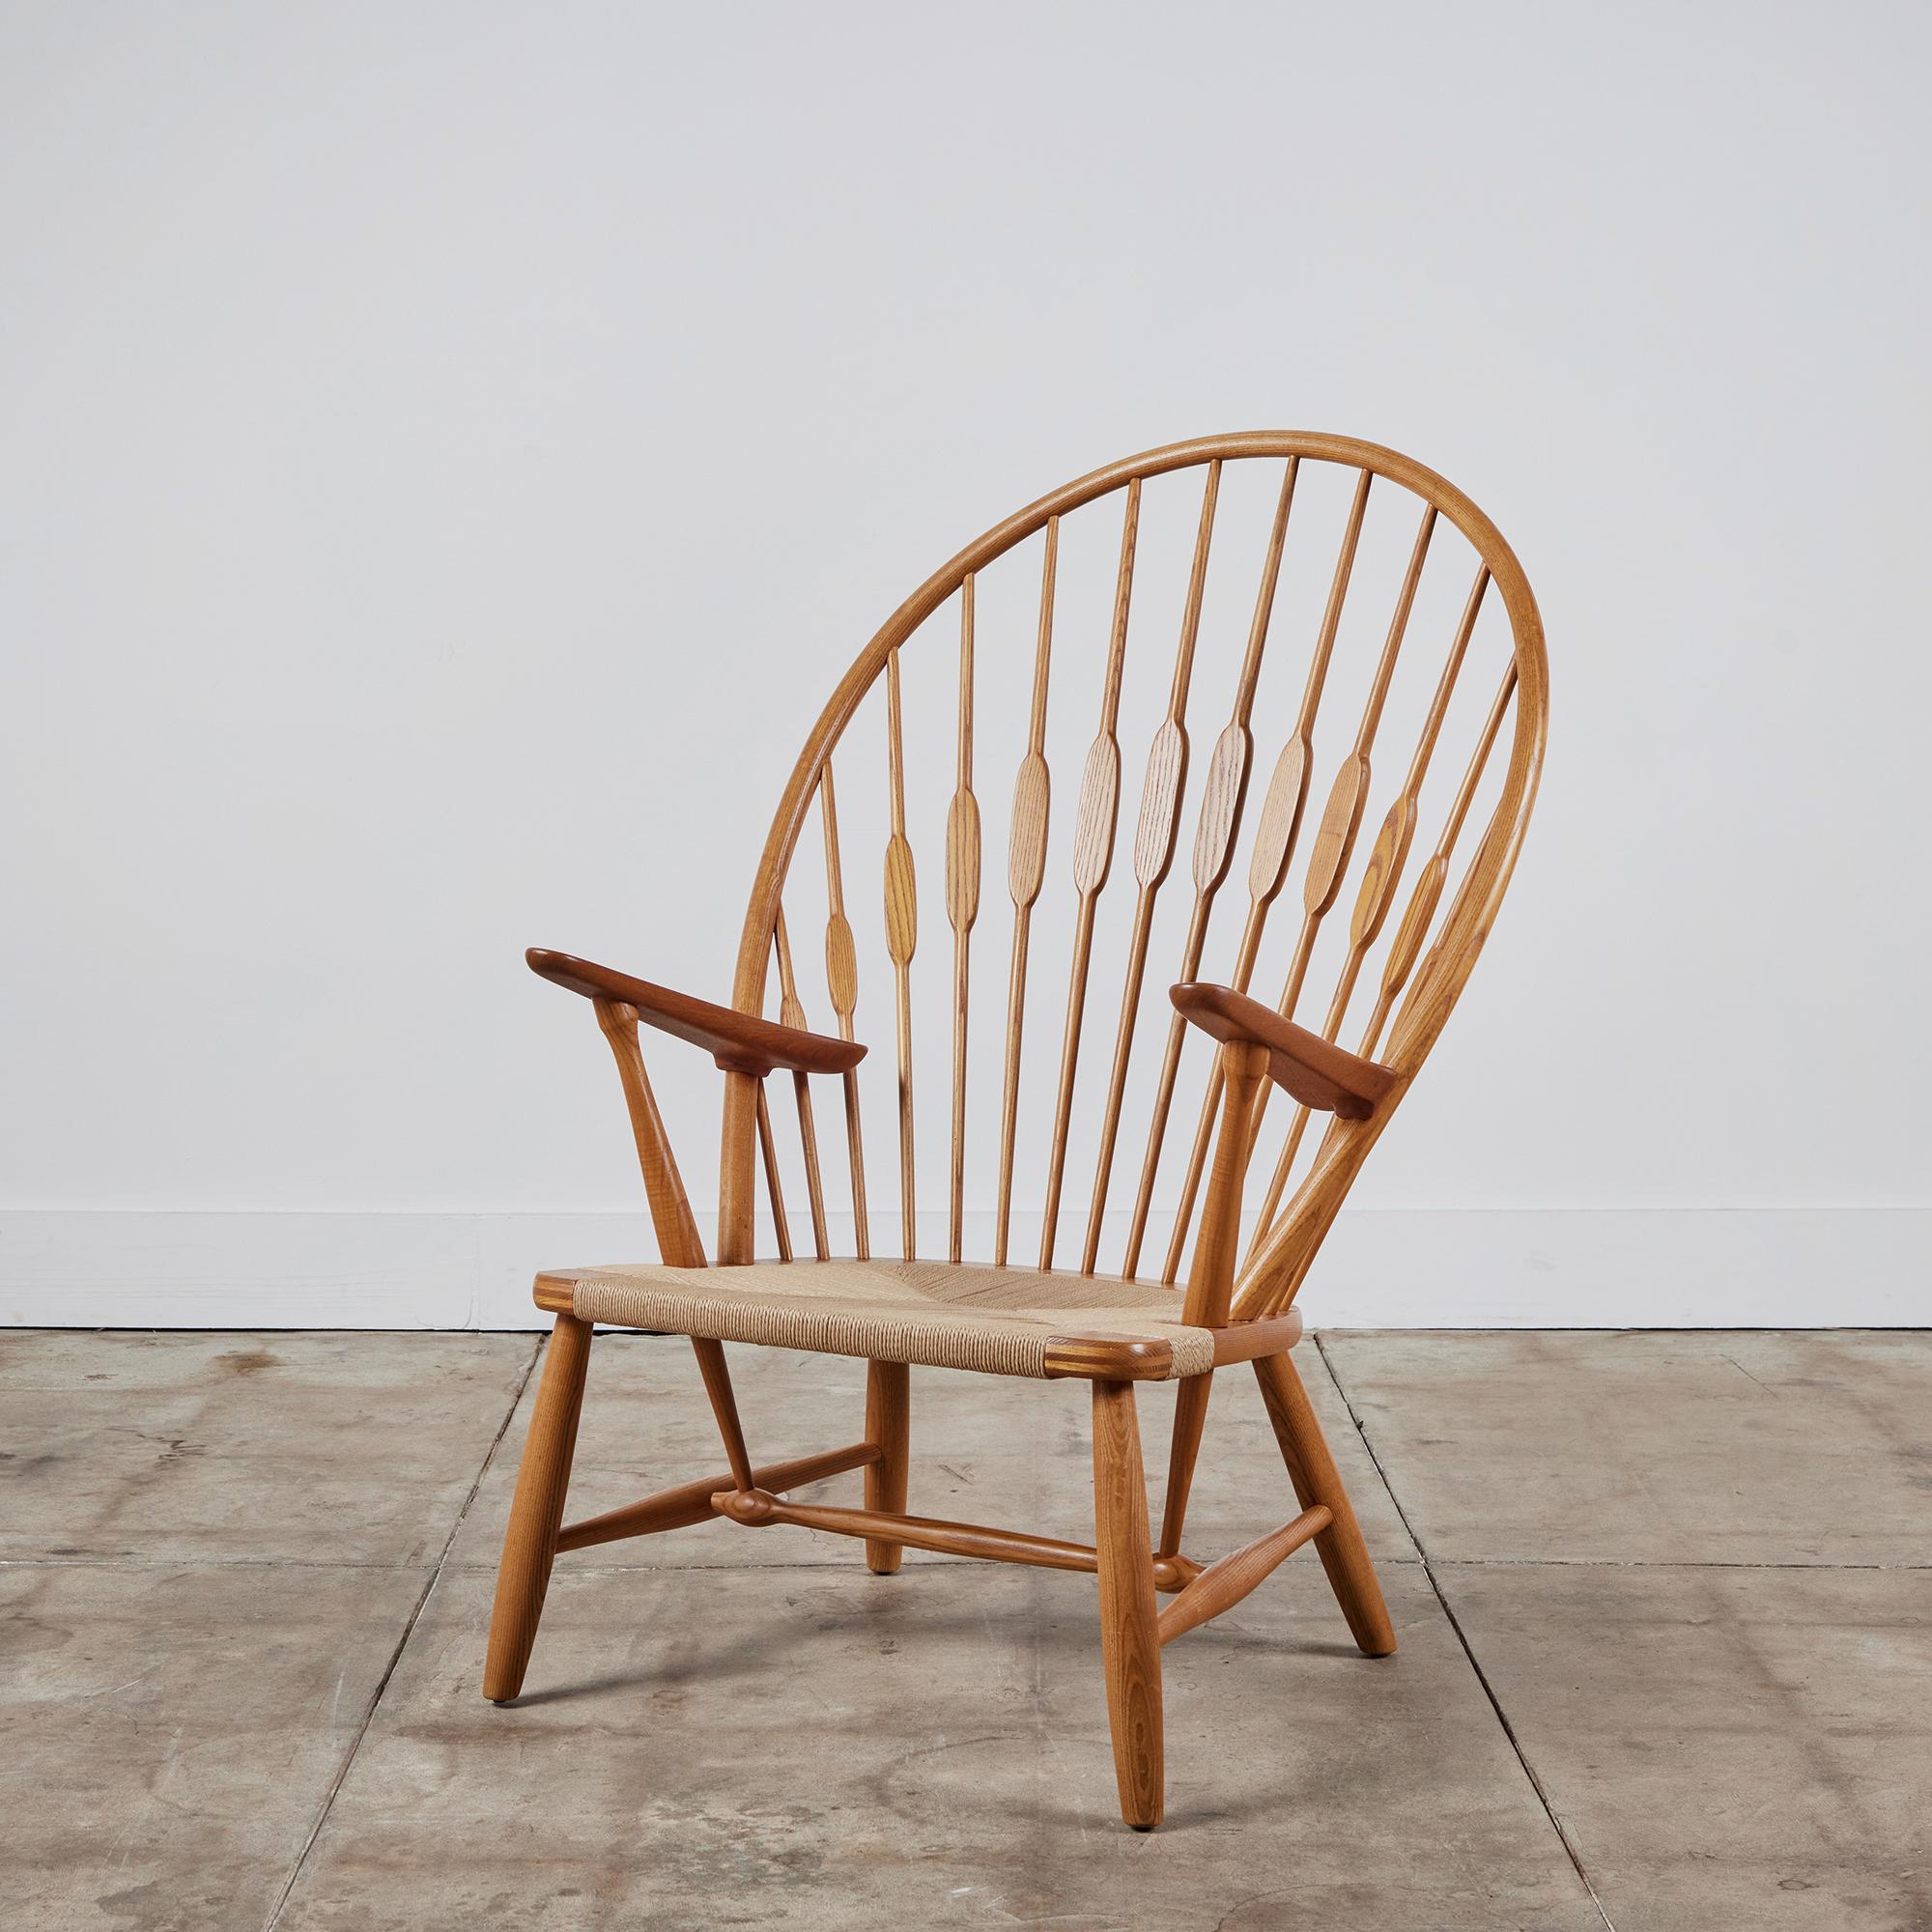 Conçue en 1947, cette chaise paon de Hans Wegner, entièrement restaurée, présente le style d'une chaise Windsor et une attention caractéristique aux détails. Le cadre en chêne et en teck massif présente un dossier haut et arqué, soutenu par des